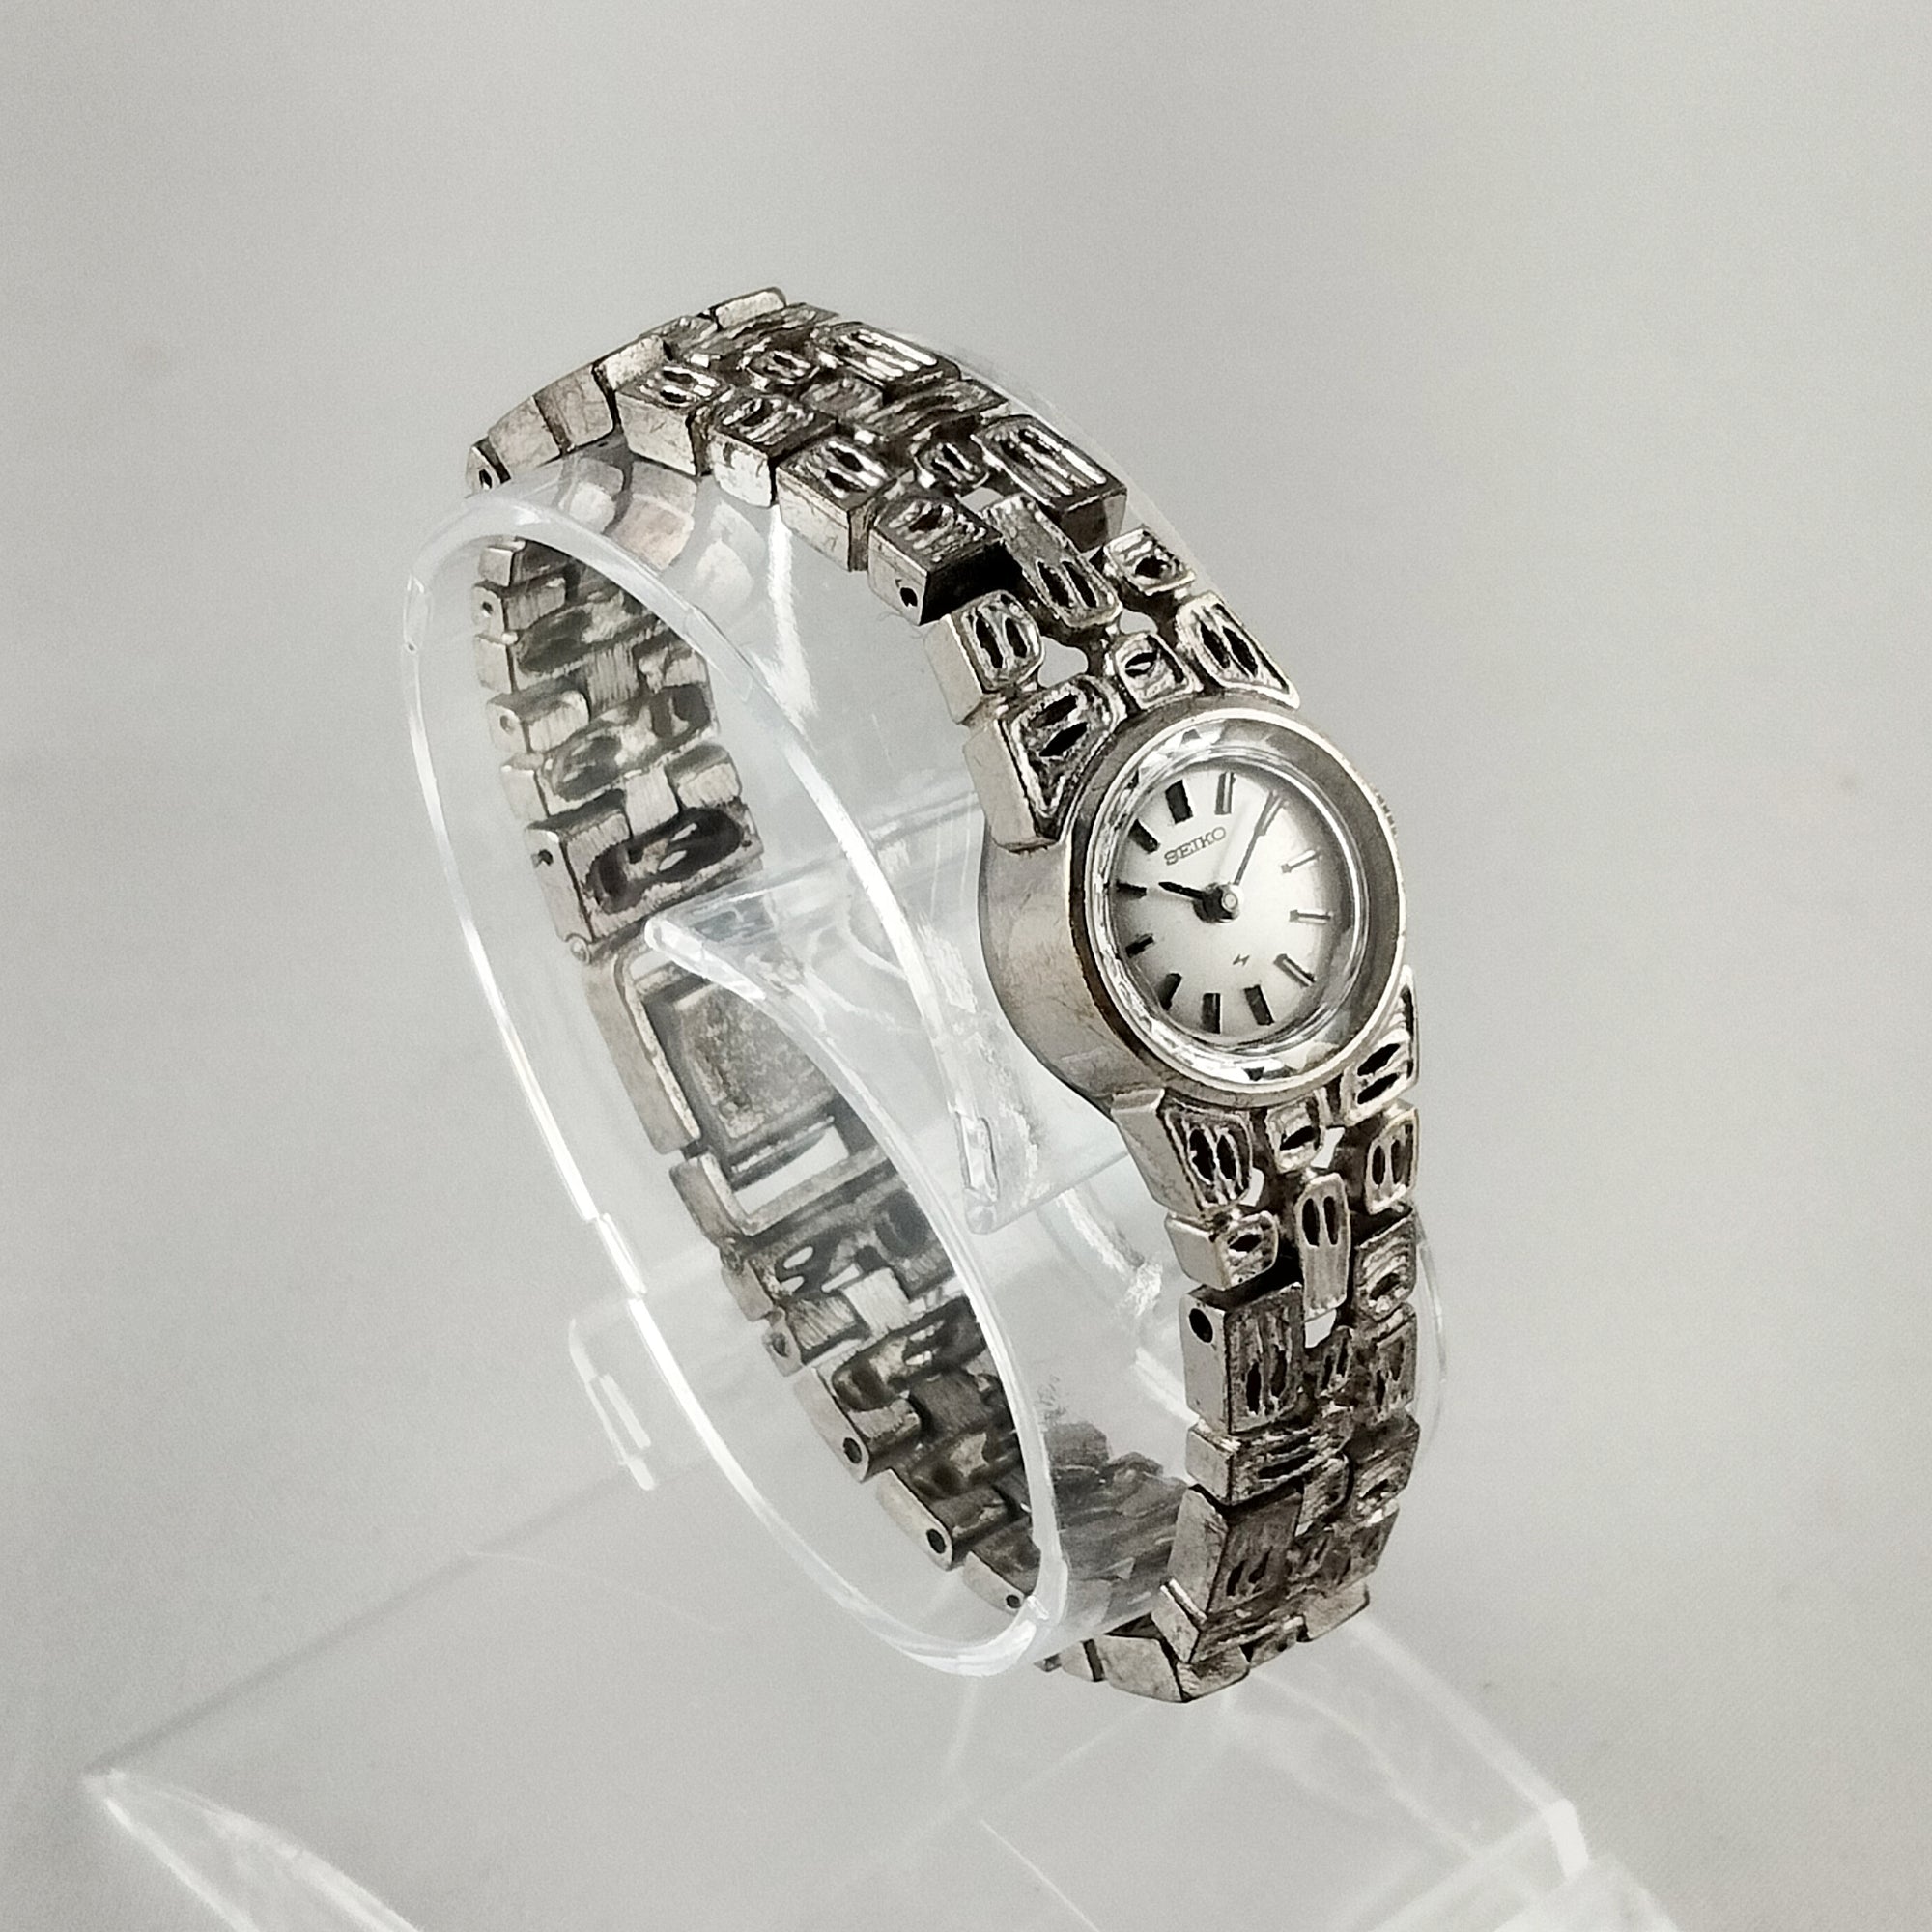 Seiko Women's Petite Silver Tone Watch, Faceted Details, Unique Bracelet Strap